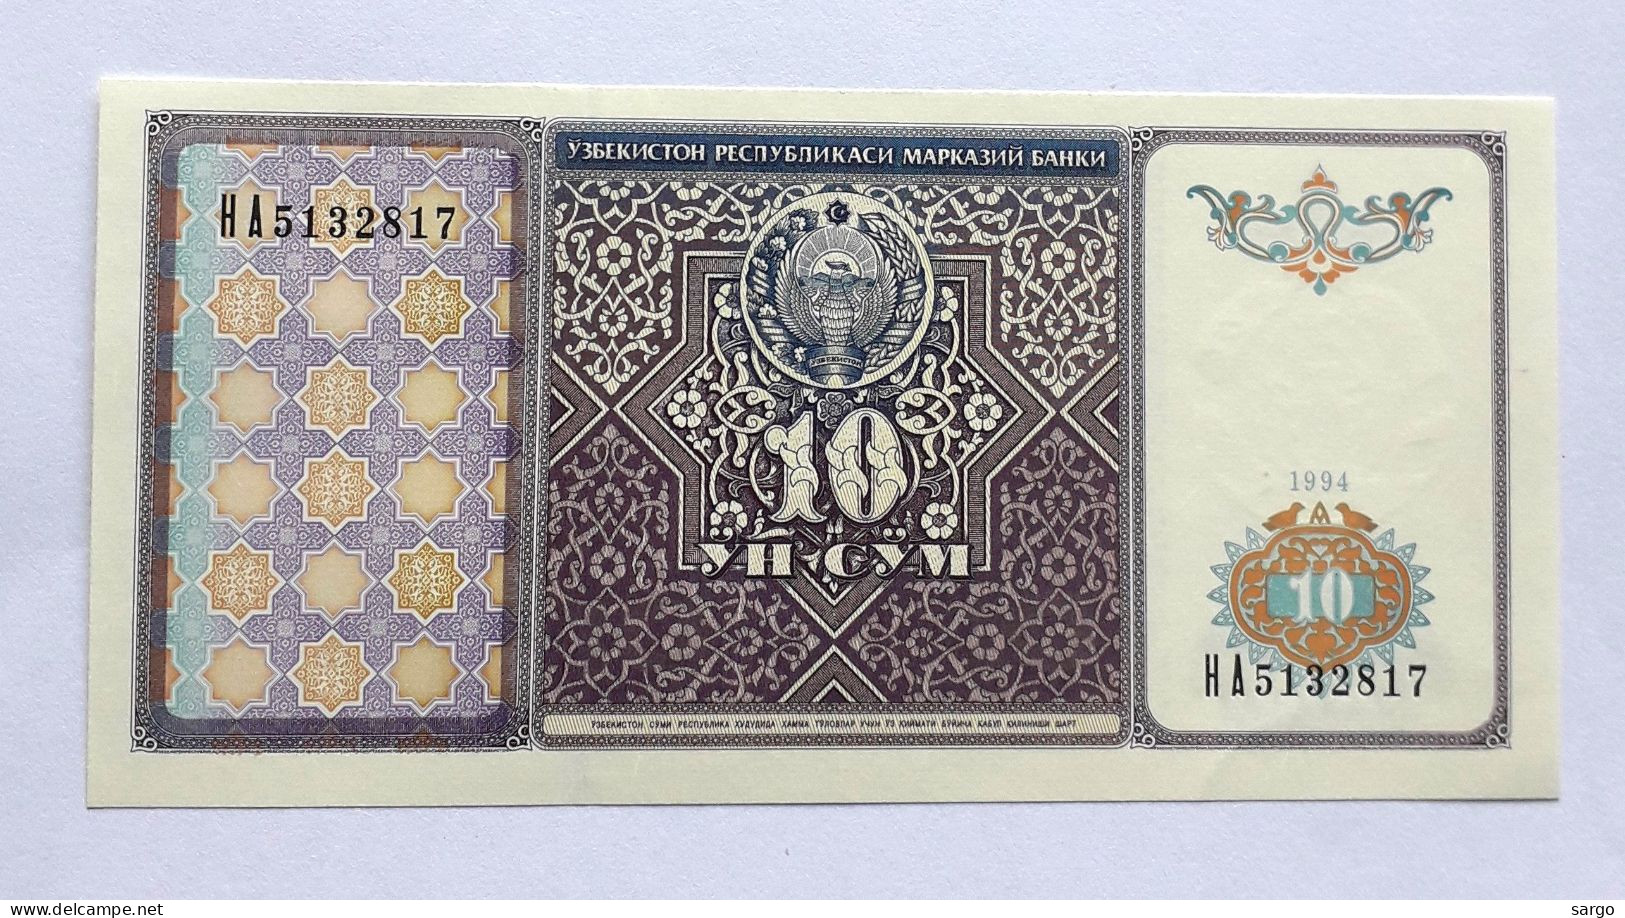 UZBEKISTAN  - 10 SO'M - P 76  (1994) - UNC - BANKNOTES - PAPER MONEY - CARTAMONETA - - Ouzbékistan